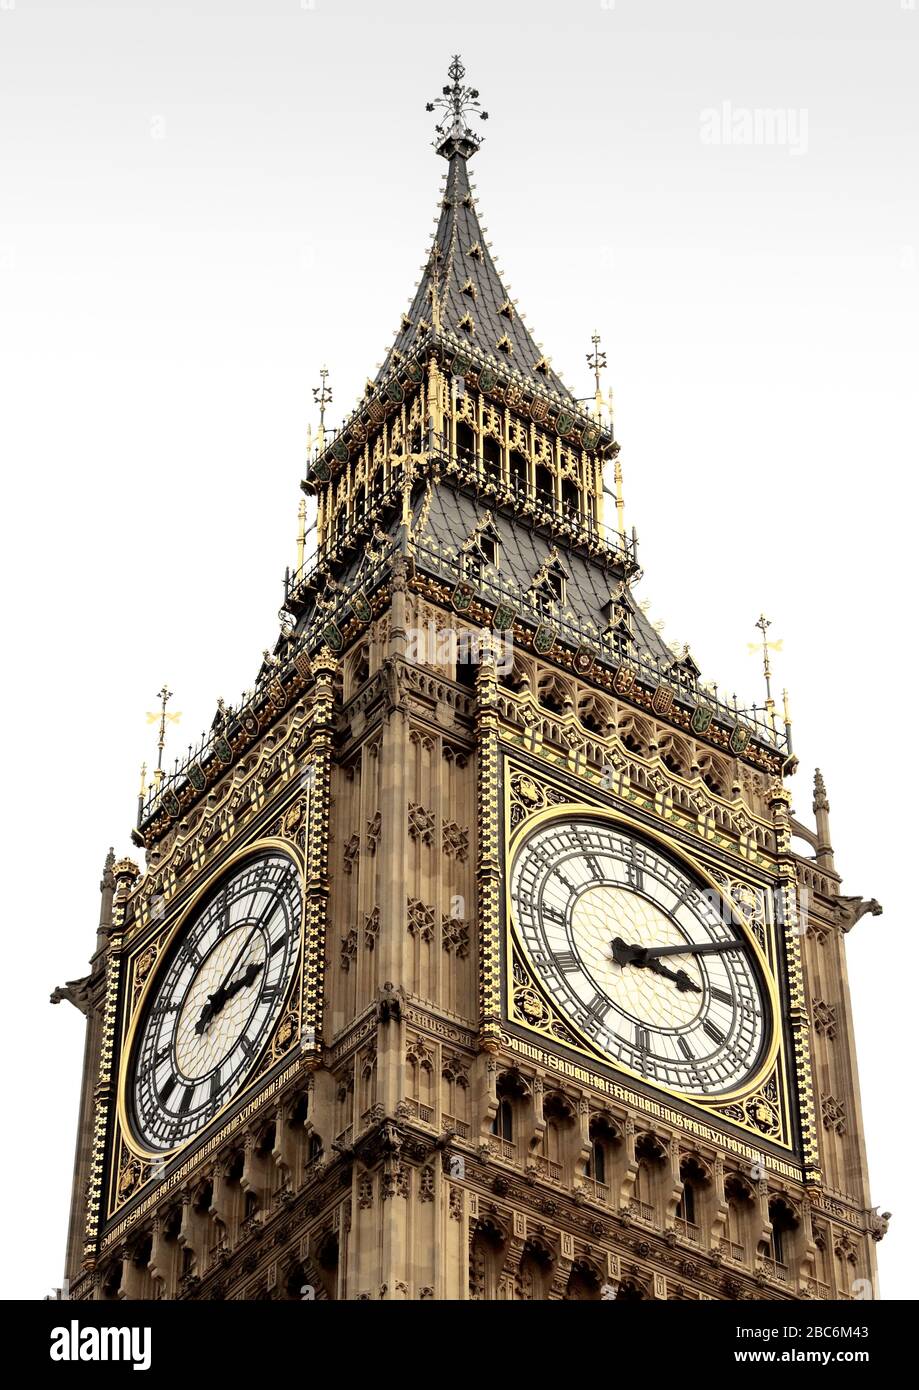 Gros plan de deux heures sur la Tour St Stephens ou la Tour Elizabeth, communément appelée Big Ben, partie des Chambres du Parlement à Westminster Banque D'Images